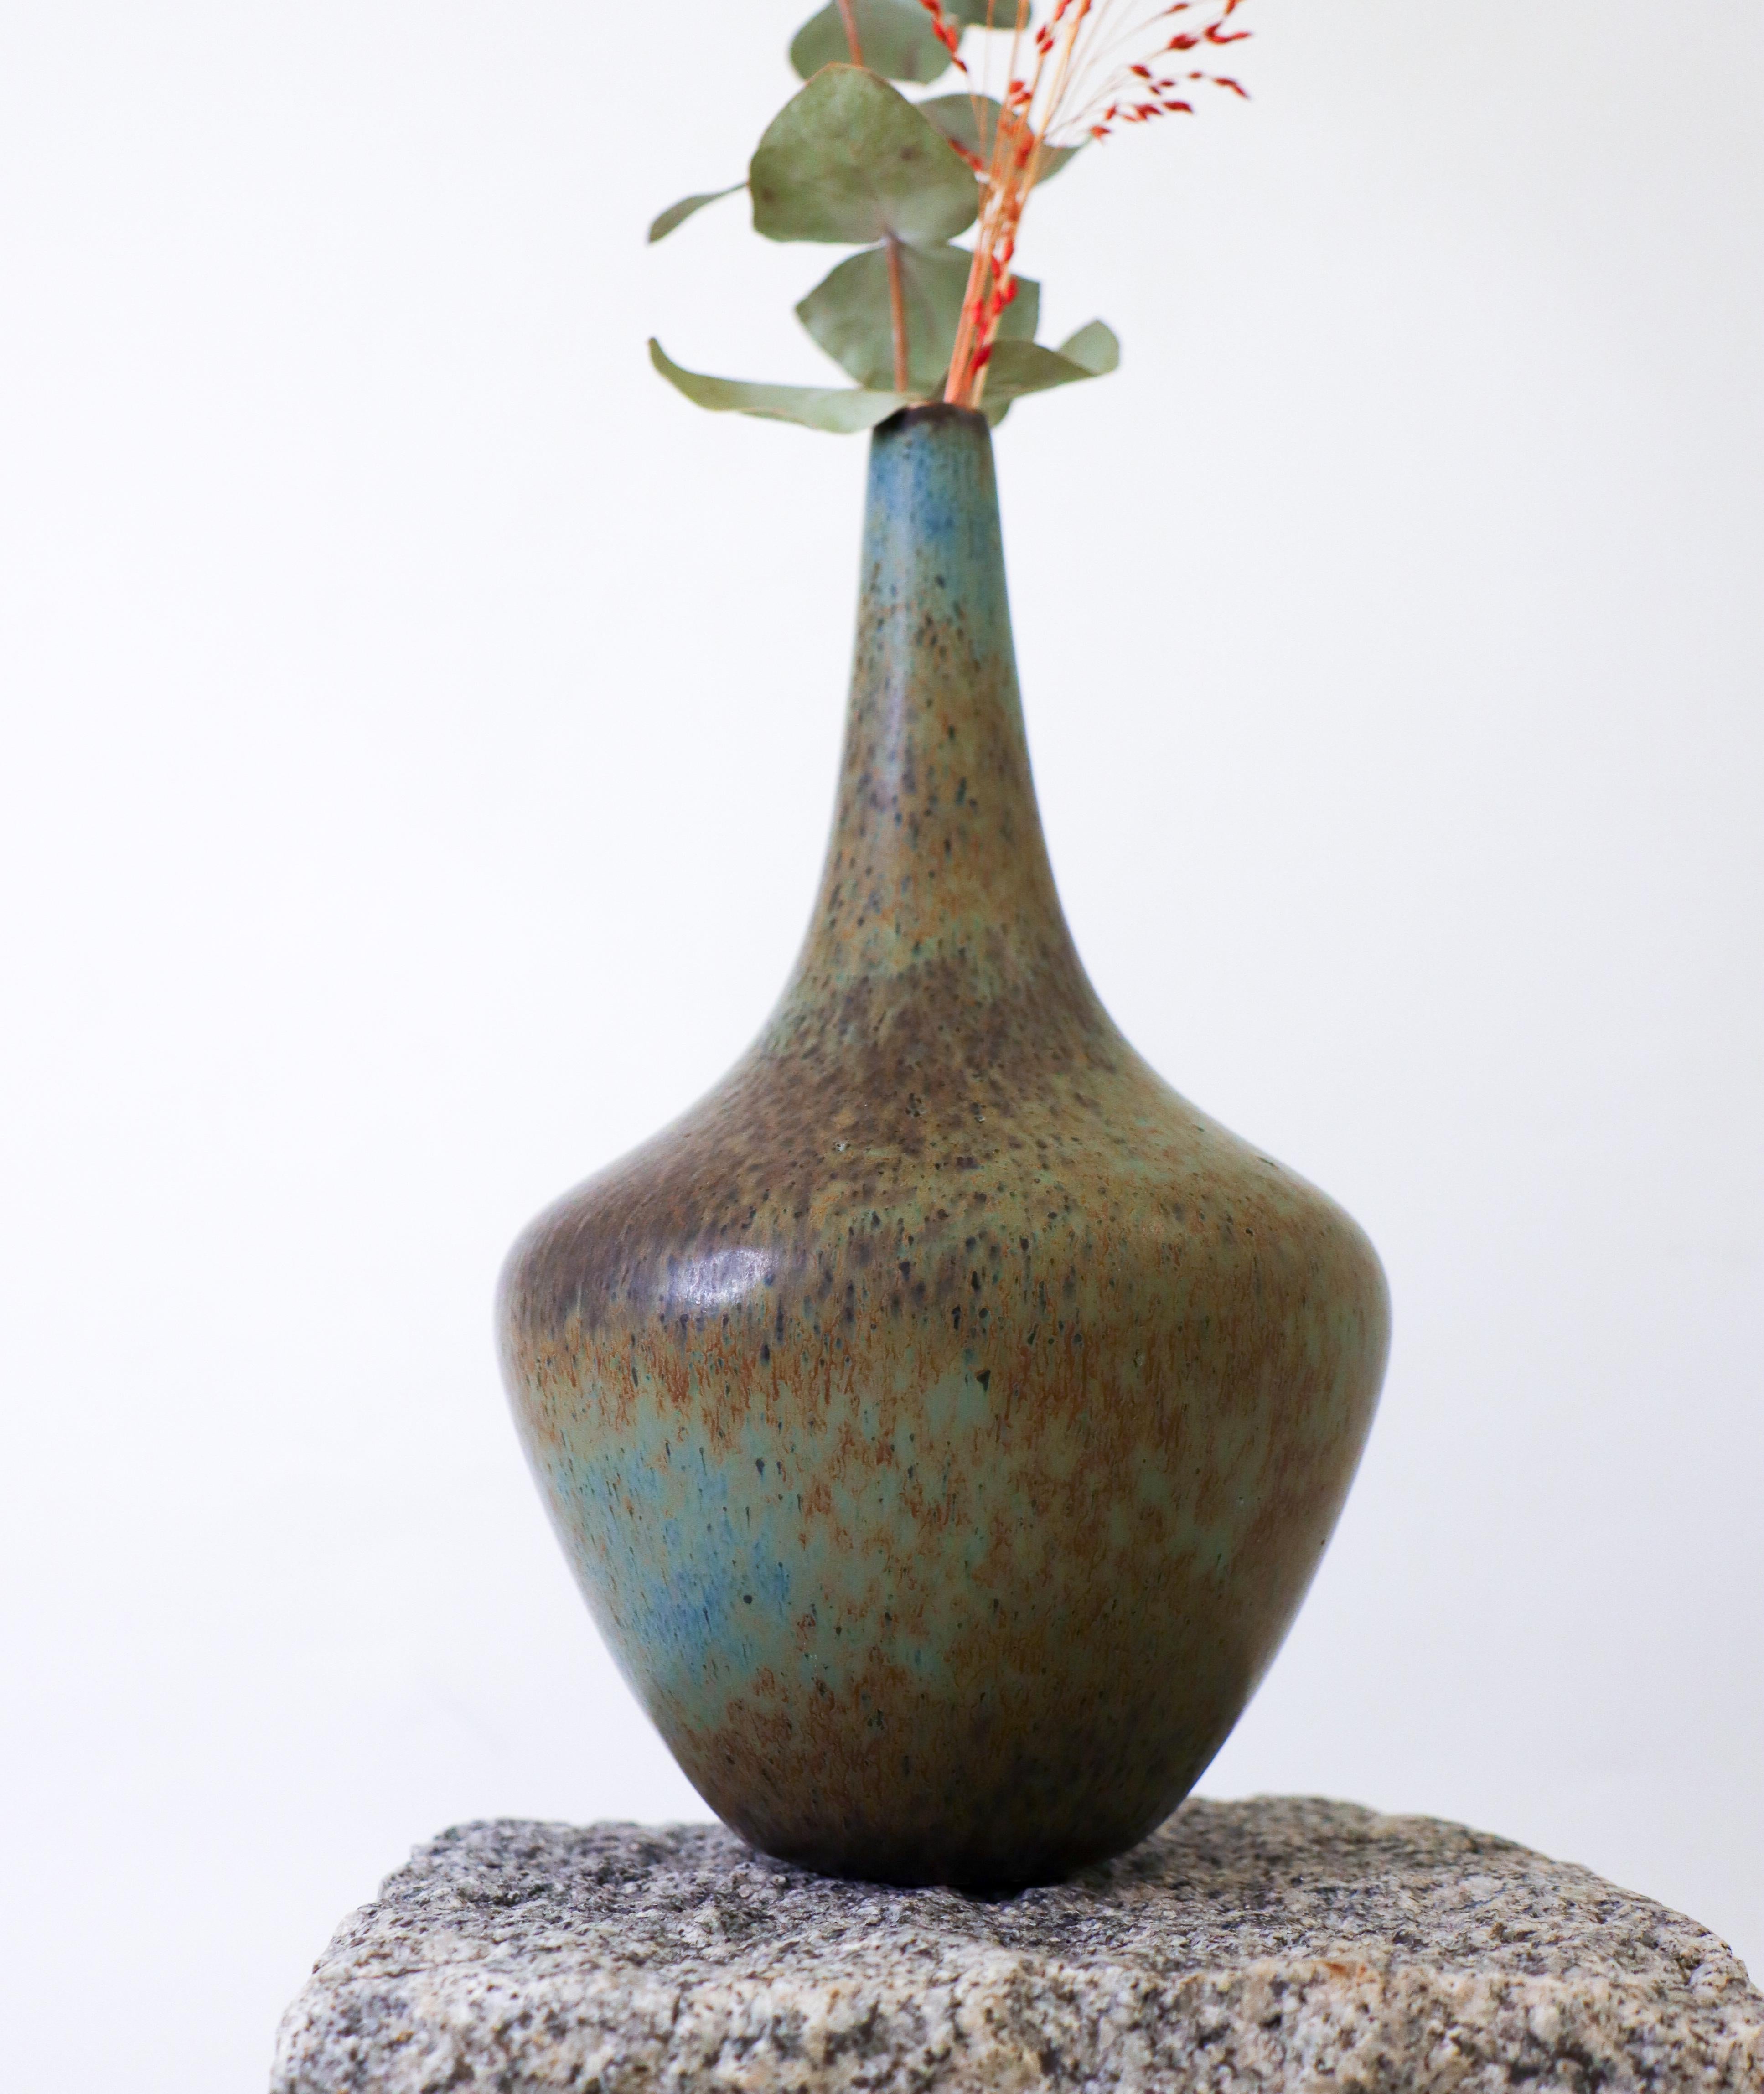 Vase vert conçu par Gunnar Nylund chez Rörstrand, d'une hauteur de 23 cm. Il est en parfait état et marqué comme étant de 2ème qualité. 

Gunnar Nylund est né à Paris en 1904 de parents sculpteurs et designers. Il a donc très vite commencé sa propre